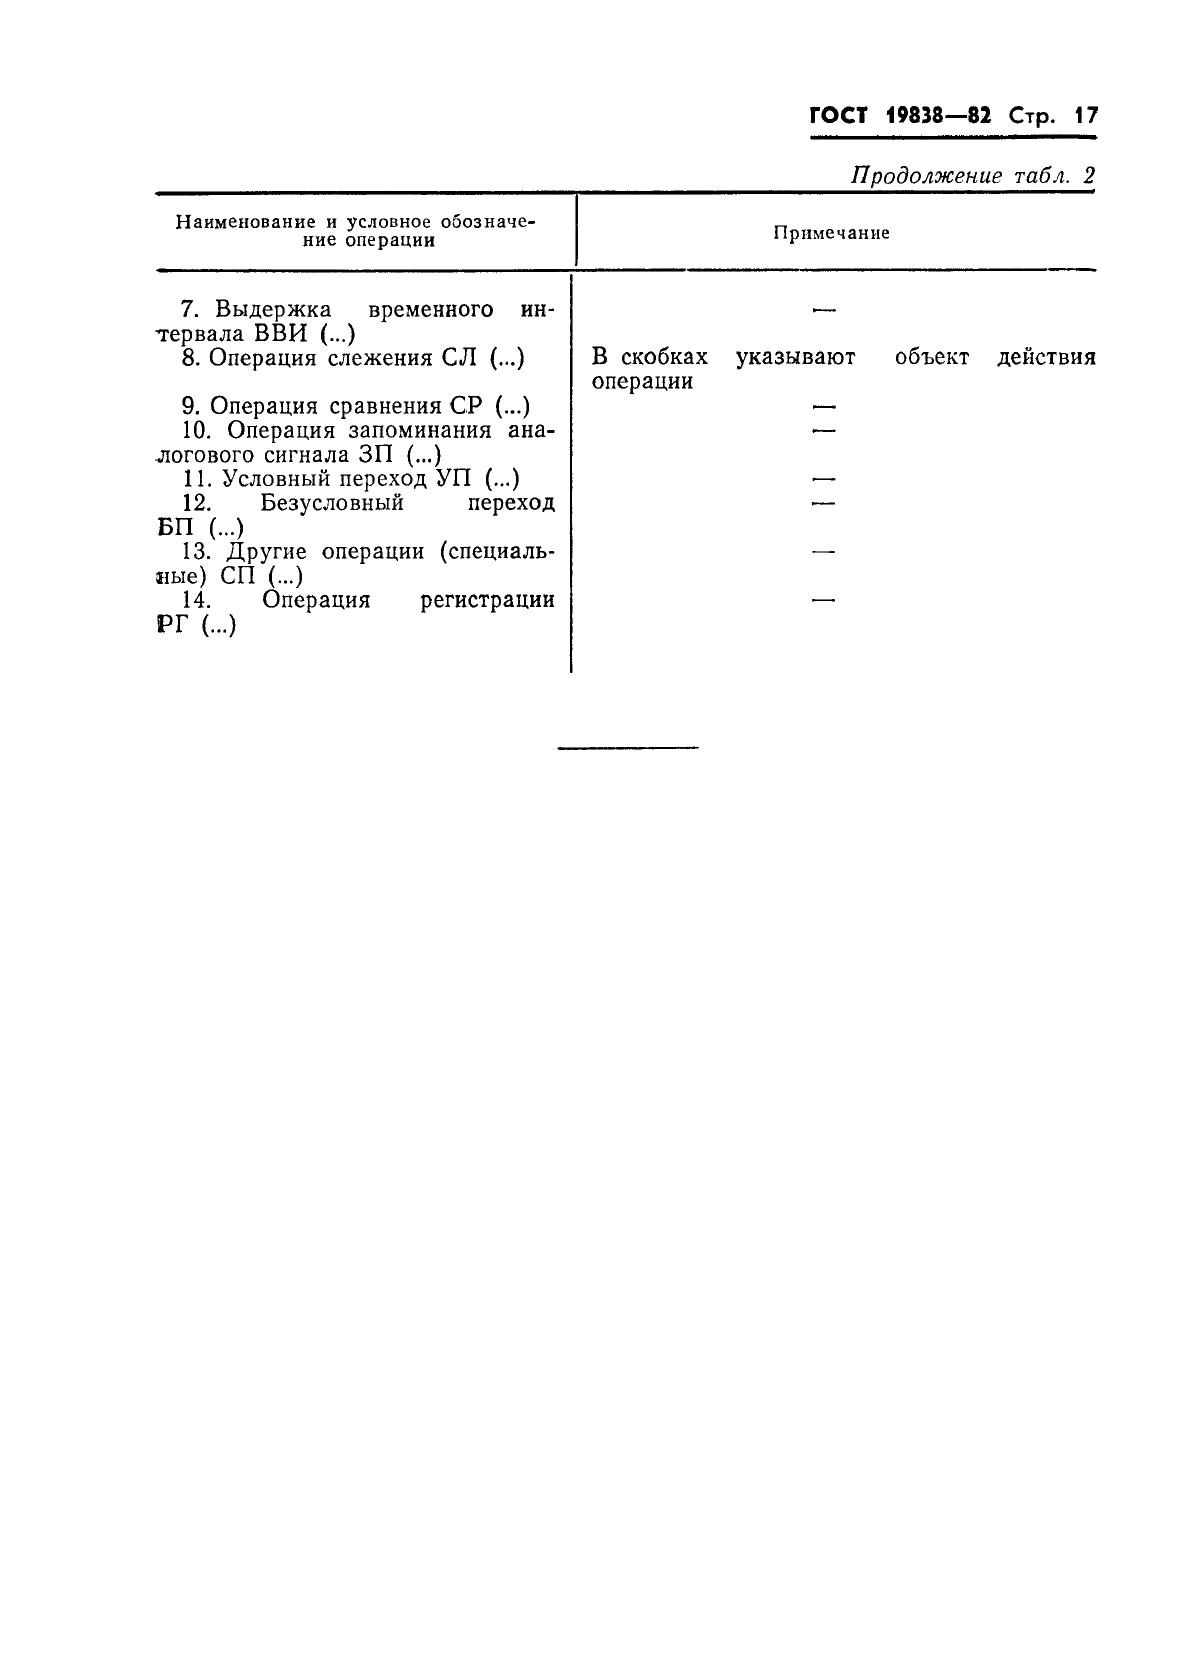 ГОСТ 19838-82 Характеристика контролепригодности изделий авиационной техники. Правила изложения и оформления (фото 18 из 21)